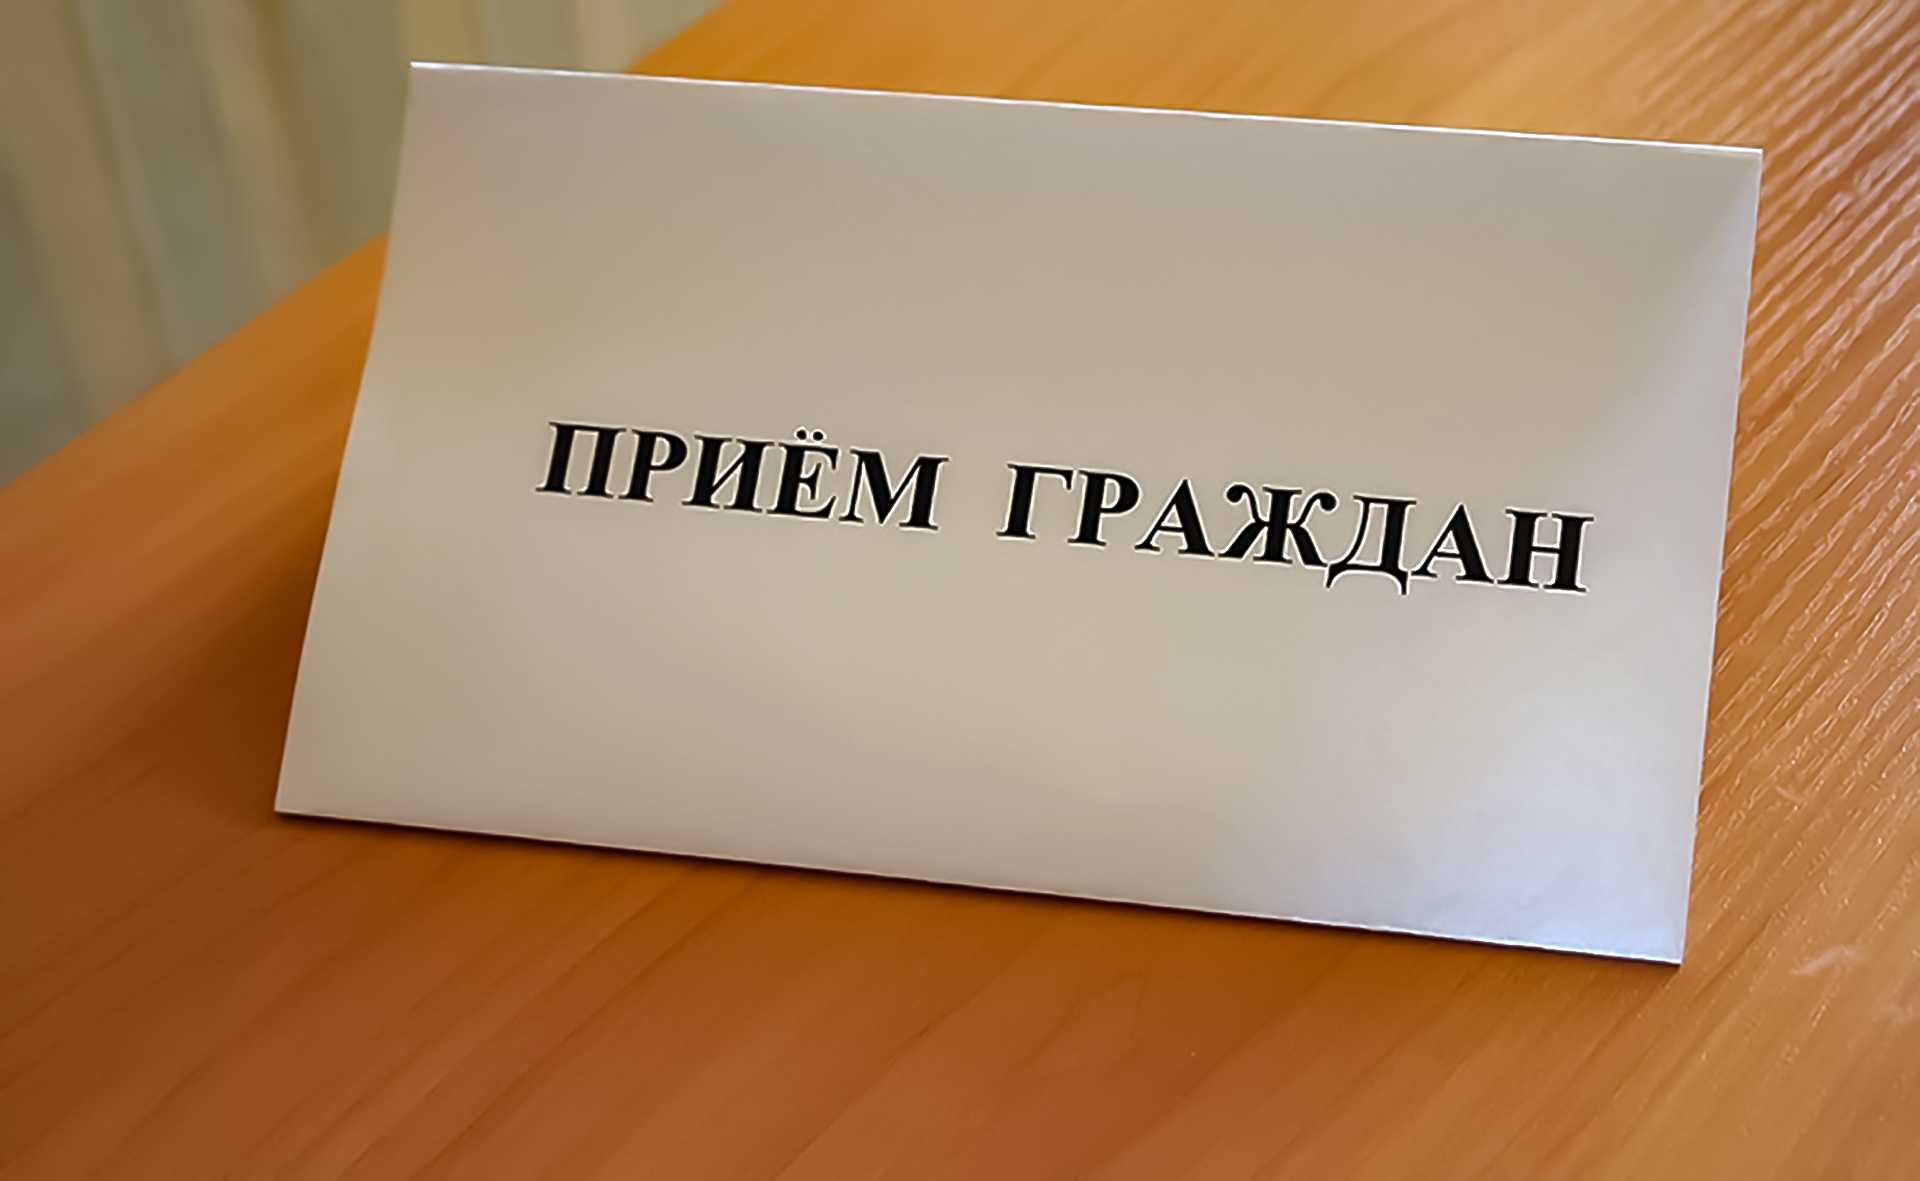 ГРАФИК приема граждан в общественной приемной администрации Сухиничского района на ноябрь 2022 год.